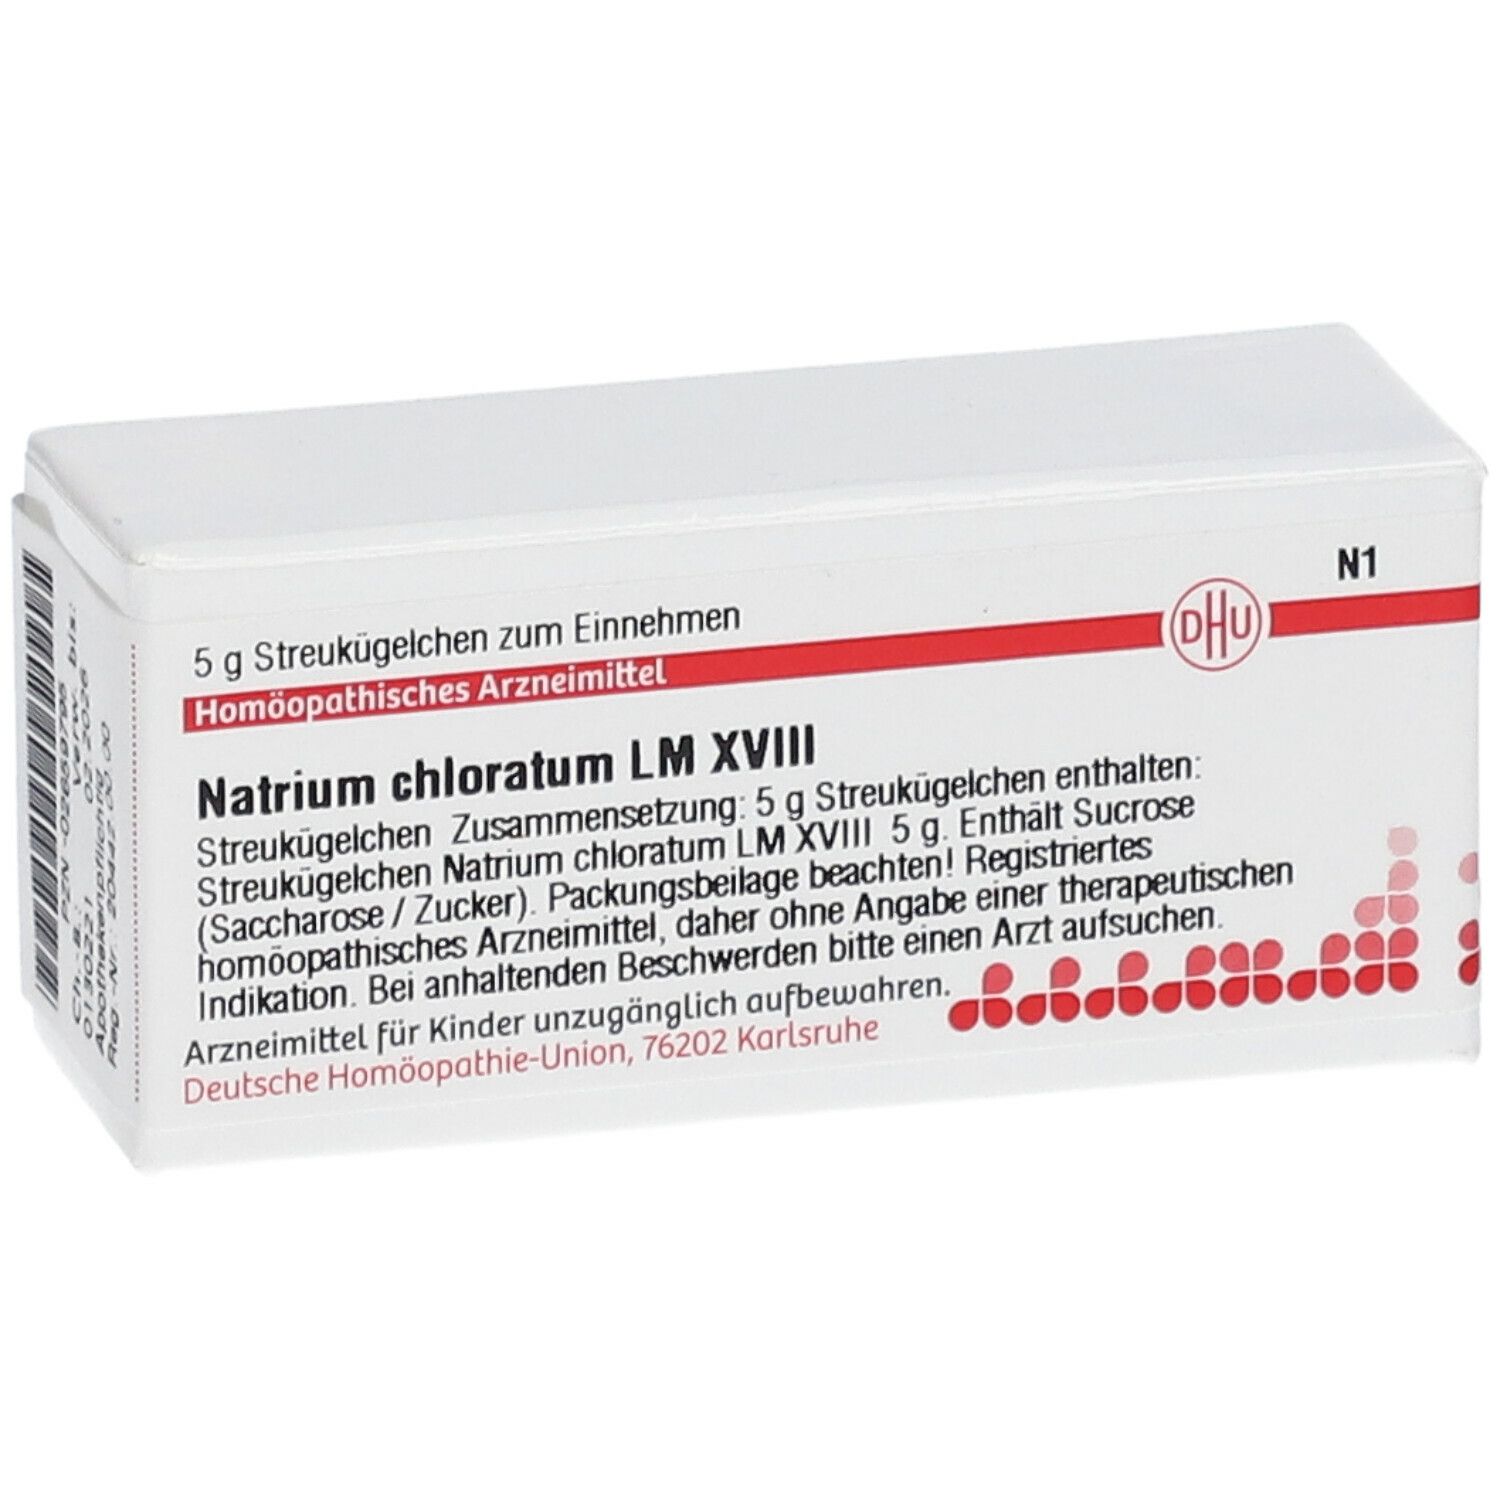 DHU Natrium Chloratum LM XVIII